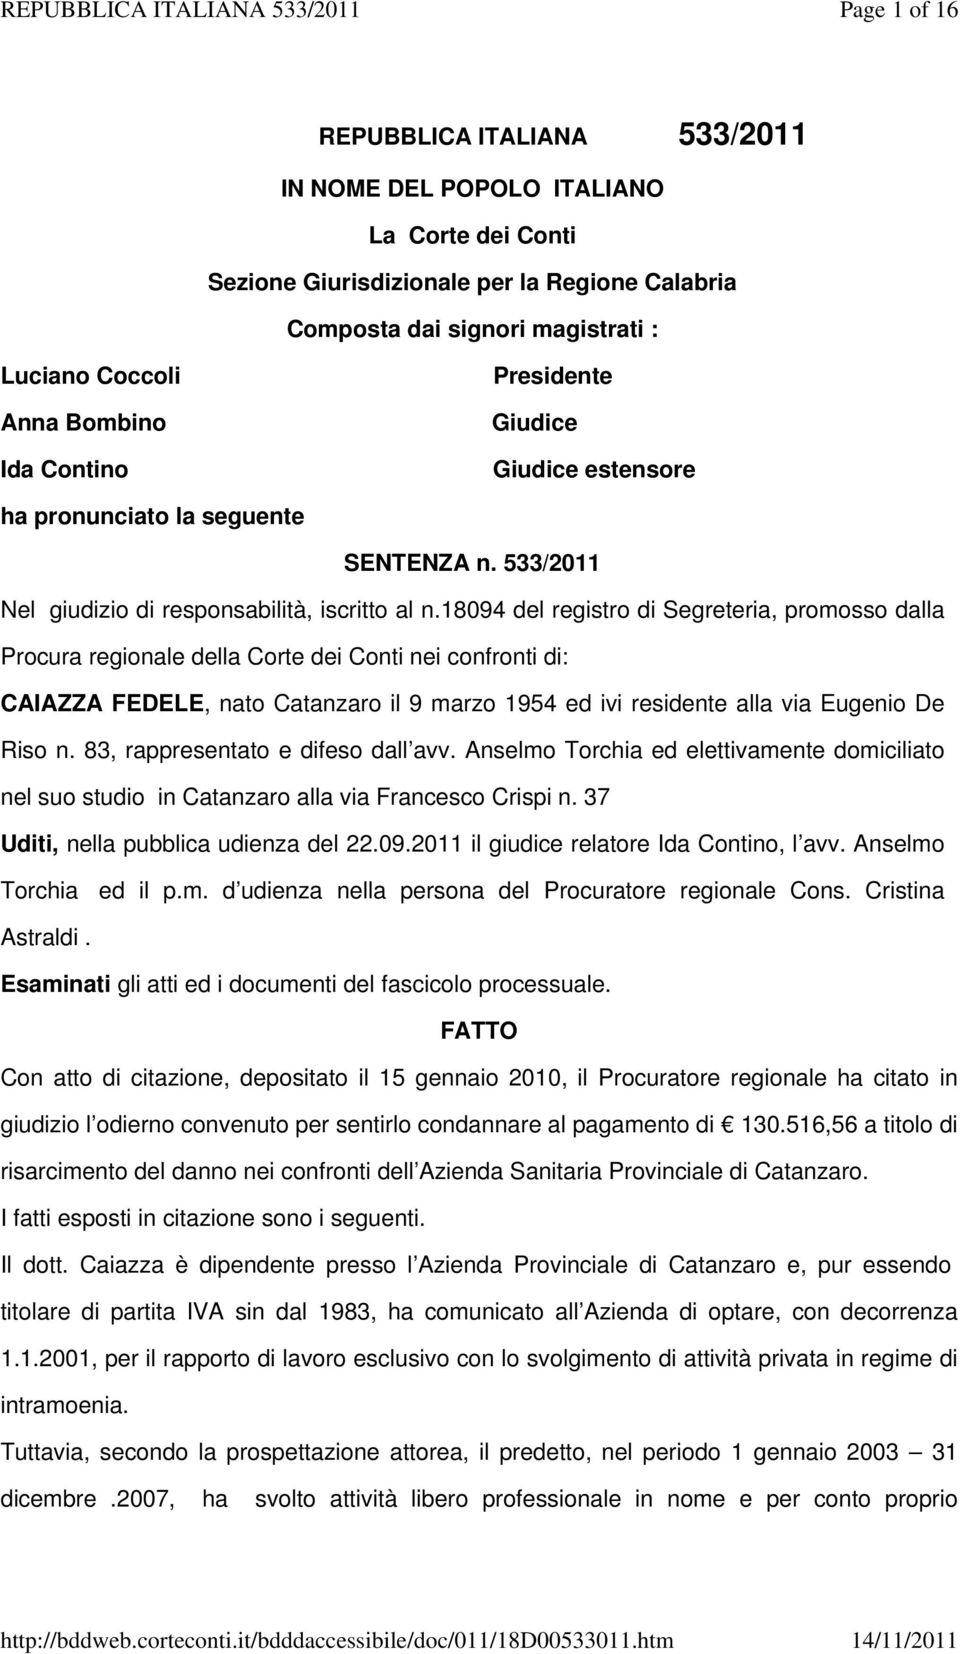 18094 del registro di Segreteria, promosso dalla Procura regionale della Corte dei Conti nei confronti di: CAIAZZA FEDELE, nato Catanzaro il 9 marzo 1954 ed ivi residente alla via Eugenio De Riso n.